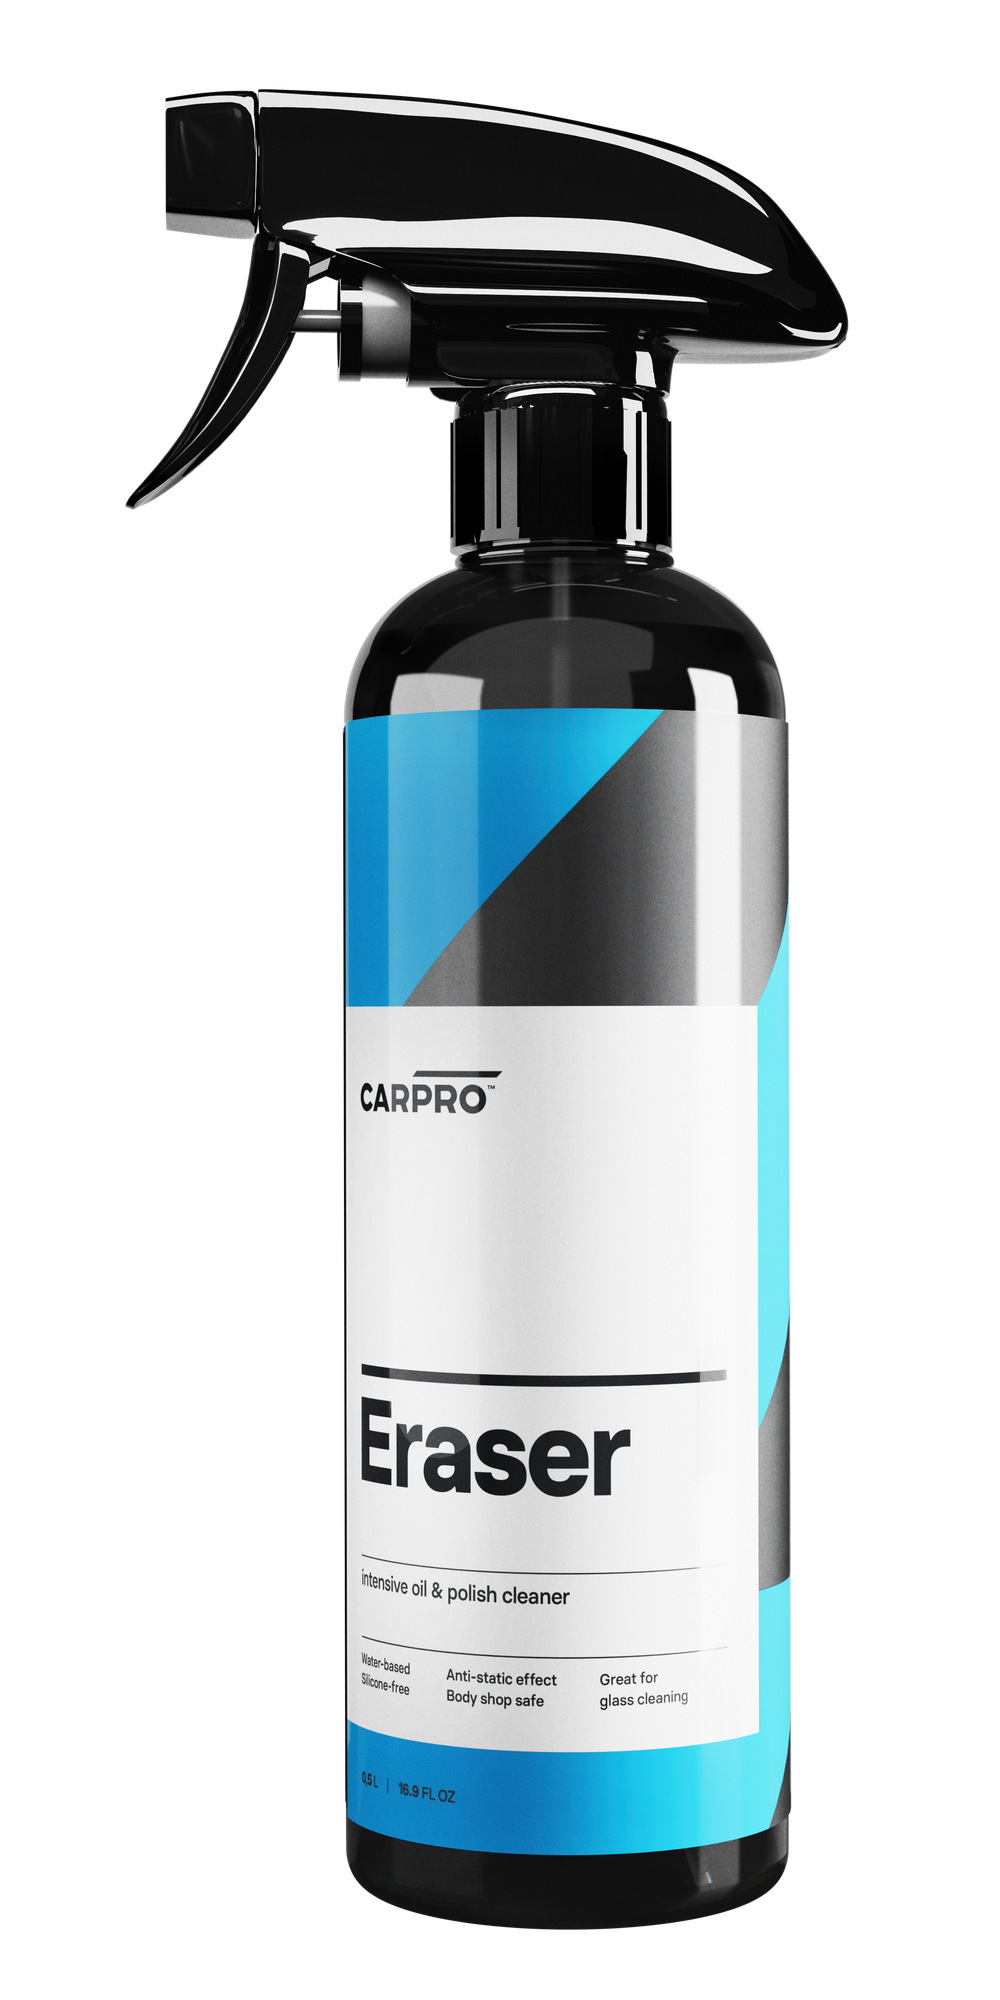 CARPRO Eraser 500mL - Nettoyant pour huiles et résidus de polissage